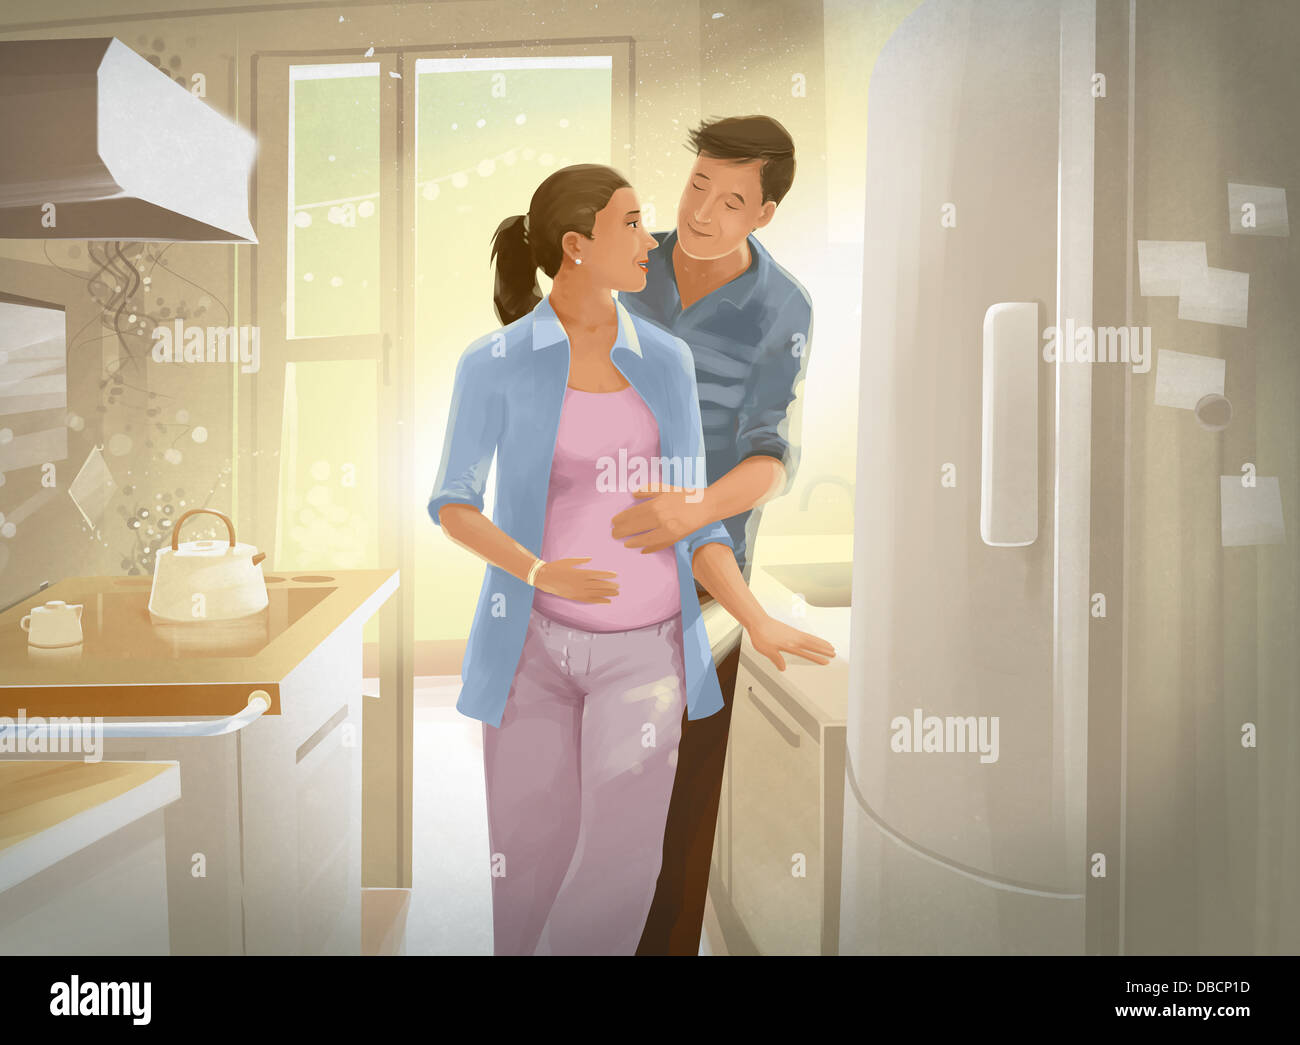 Illustration d'un nouveau couple expecting baby Banque D'Images